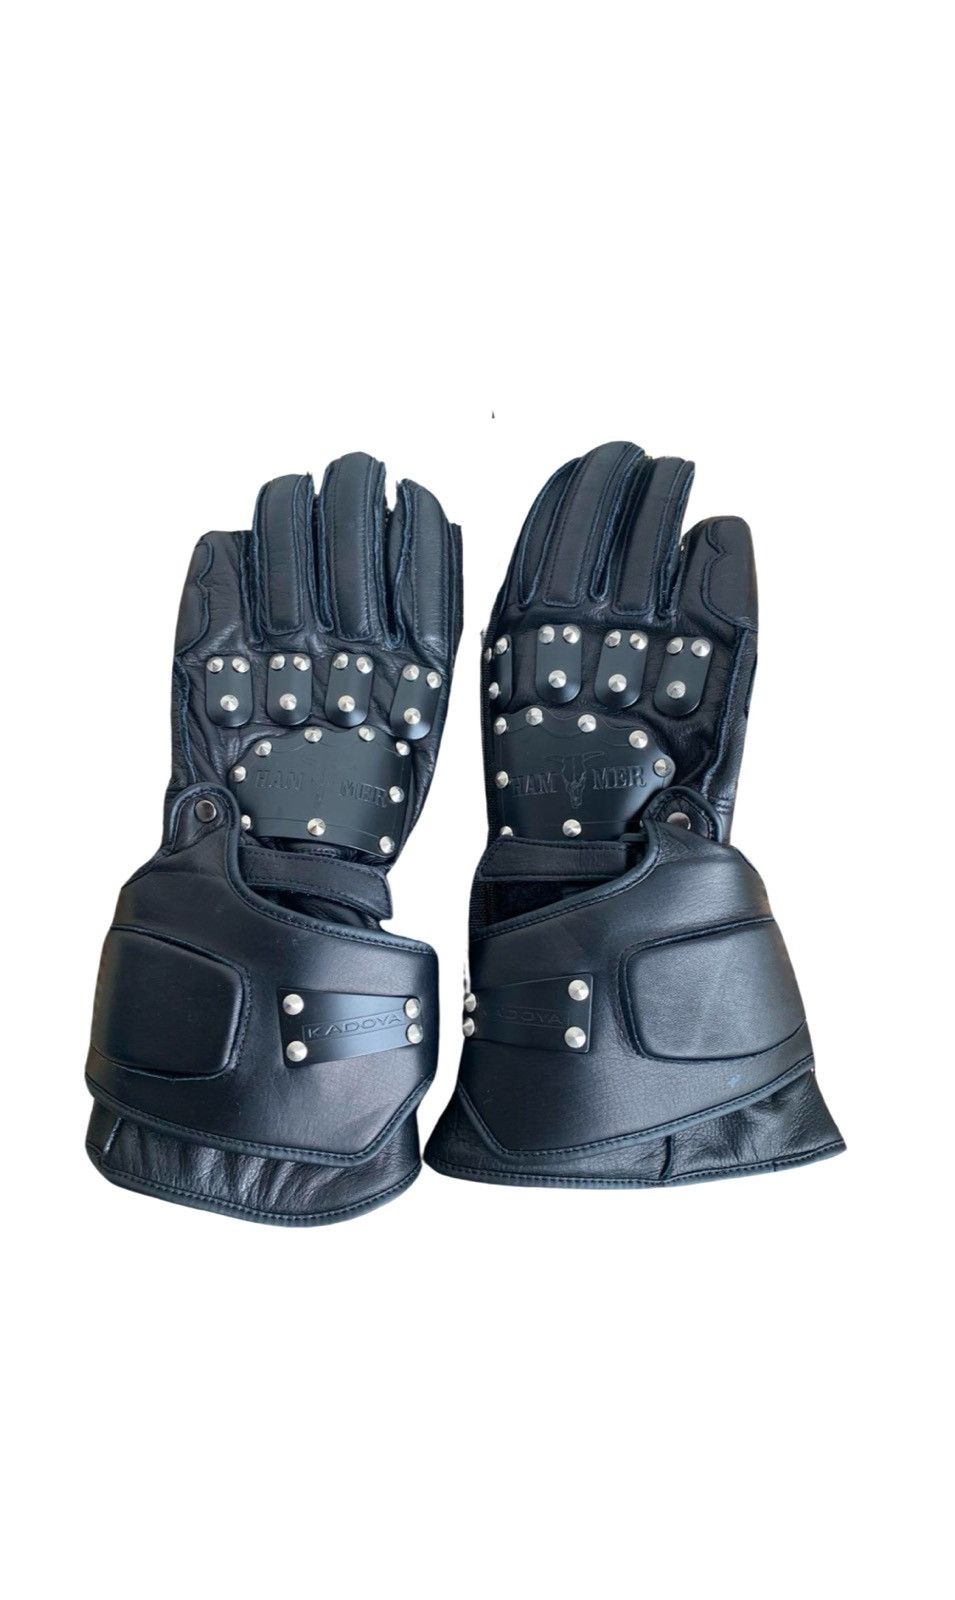 Kadoya Kadoya Black Metal Plated Hammer Gauntlet Gloves | Grailed